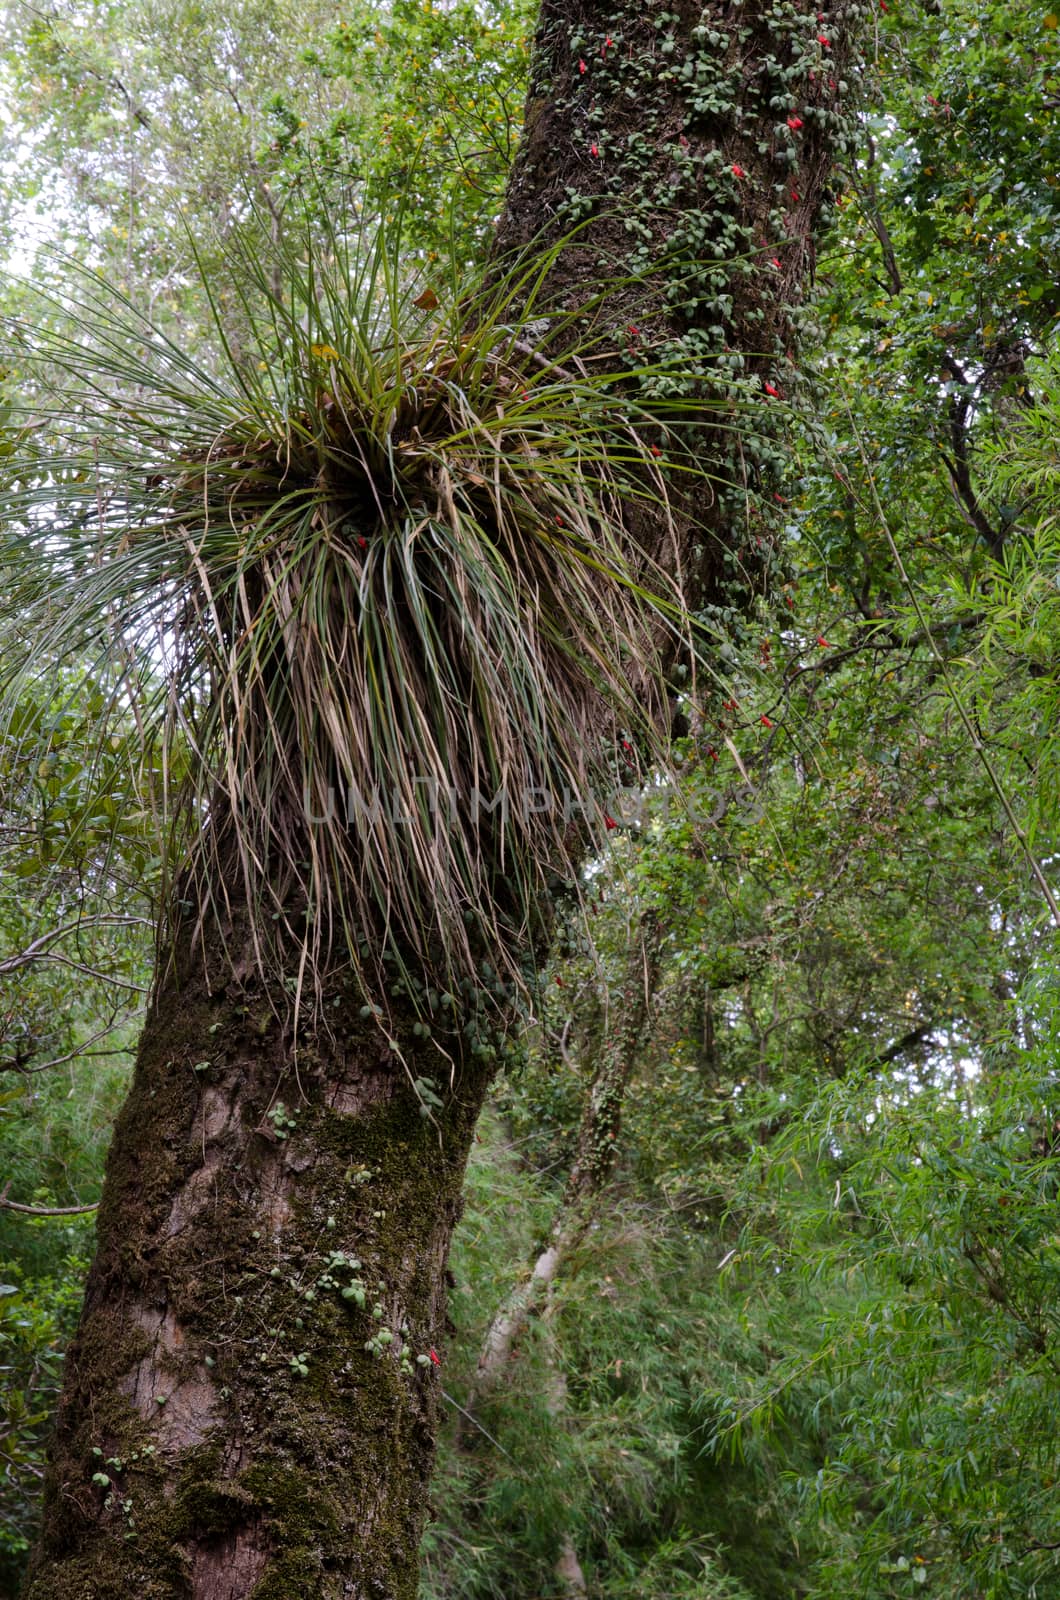 Chupalla Fascicularia bicolor on a tree in the Cerro Nielol Natural Monument. by VictorSuarez